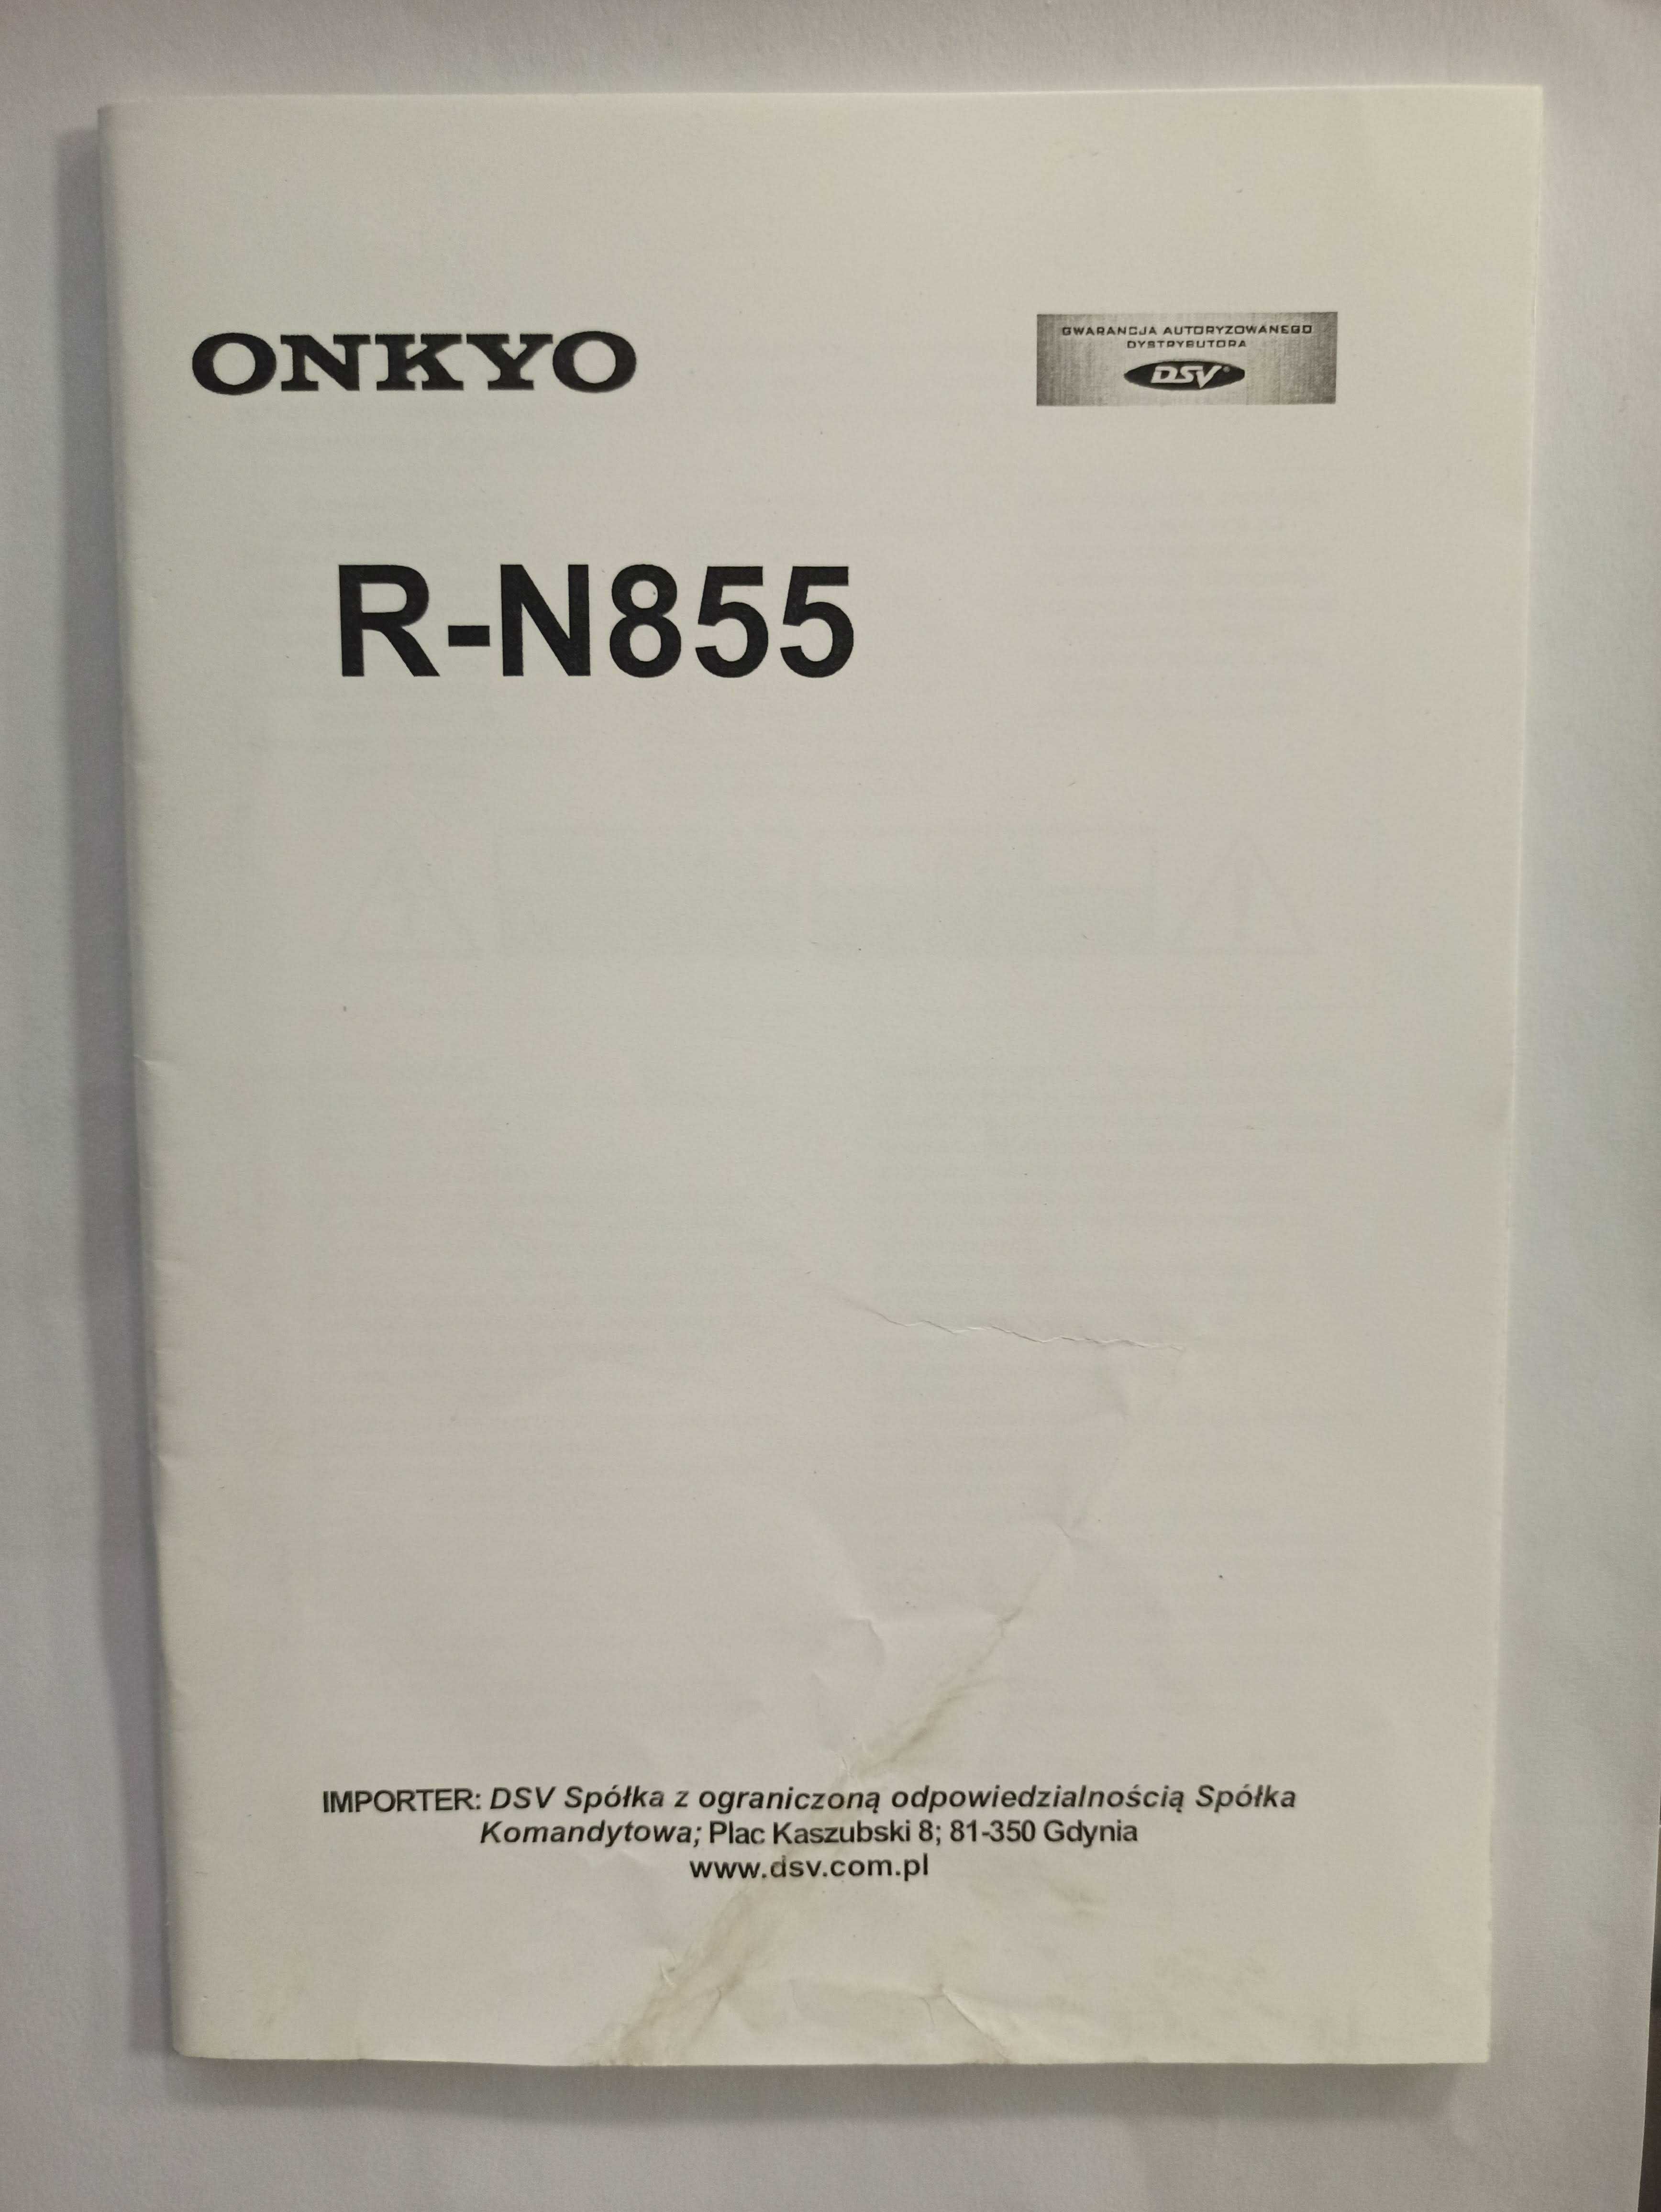 Instrukcja obsługi ONKYO R-N855 w języku polskim, szczegółowa.